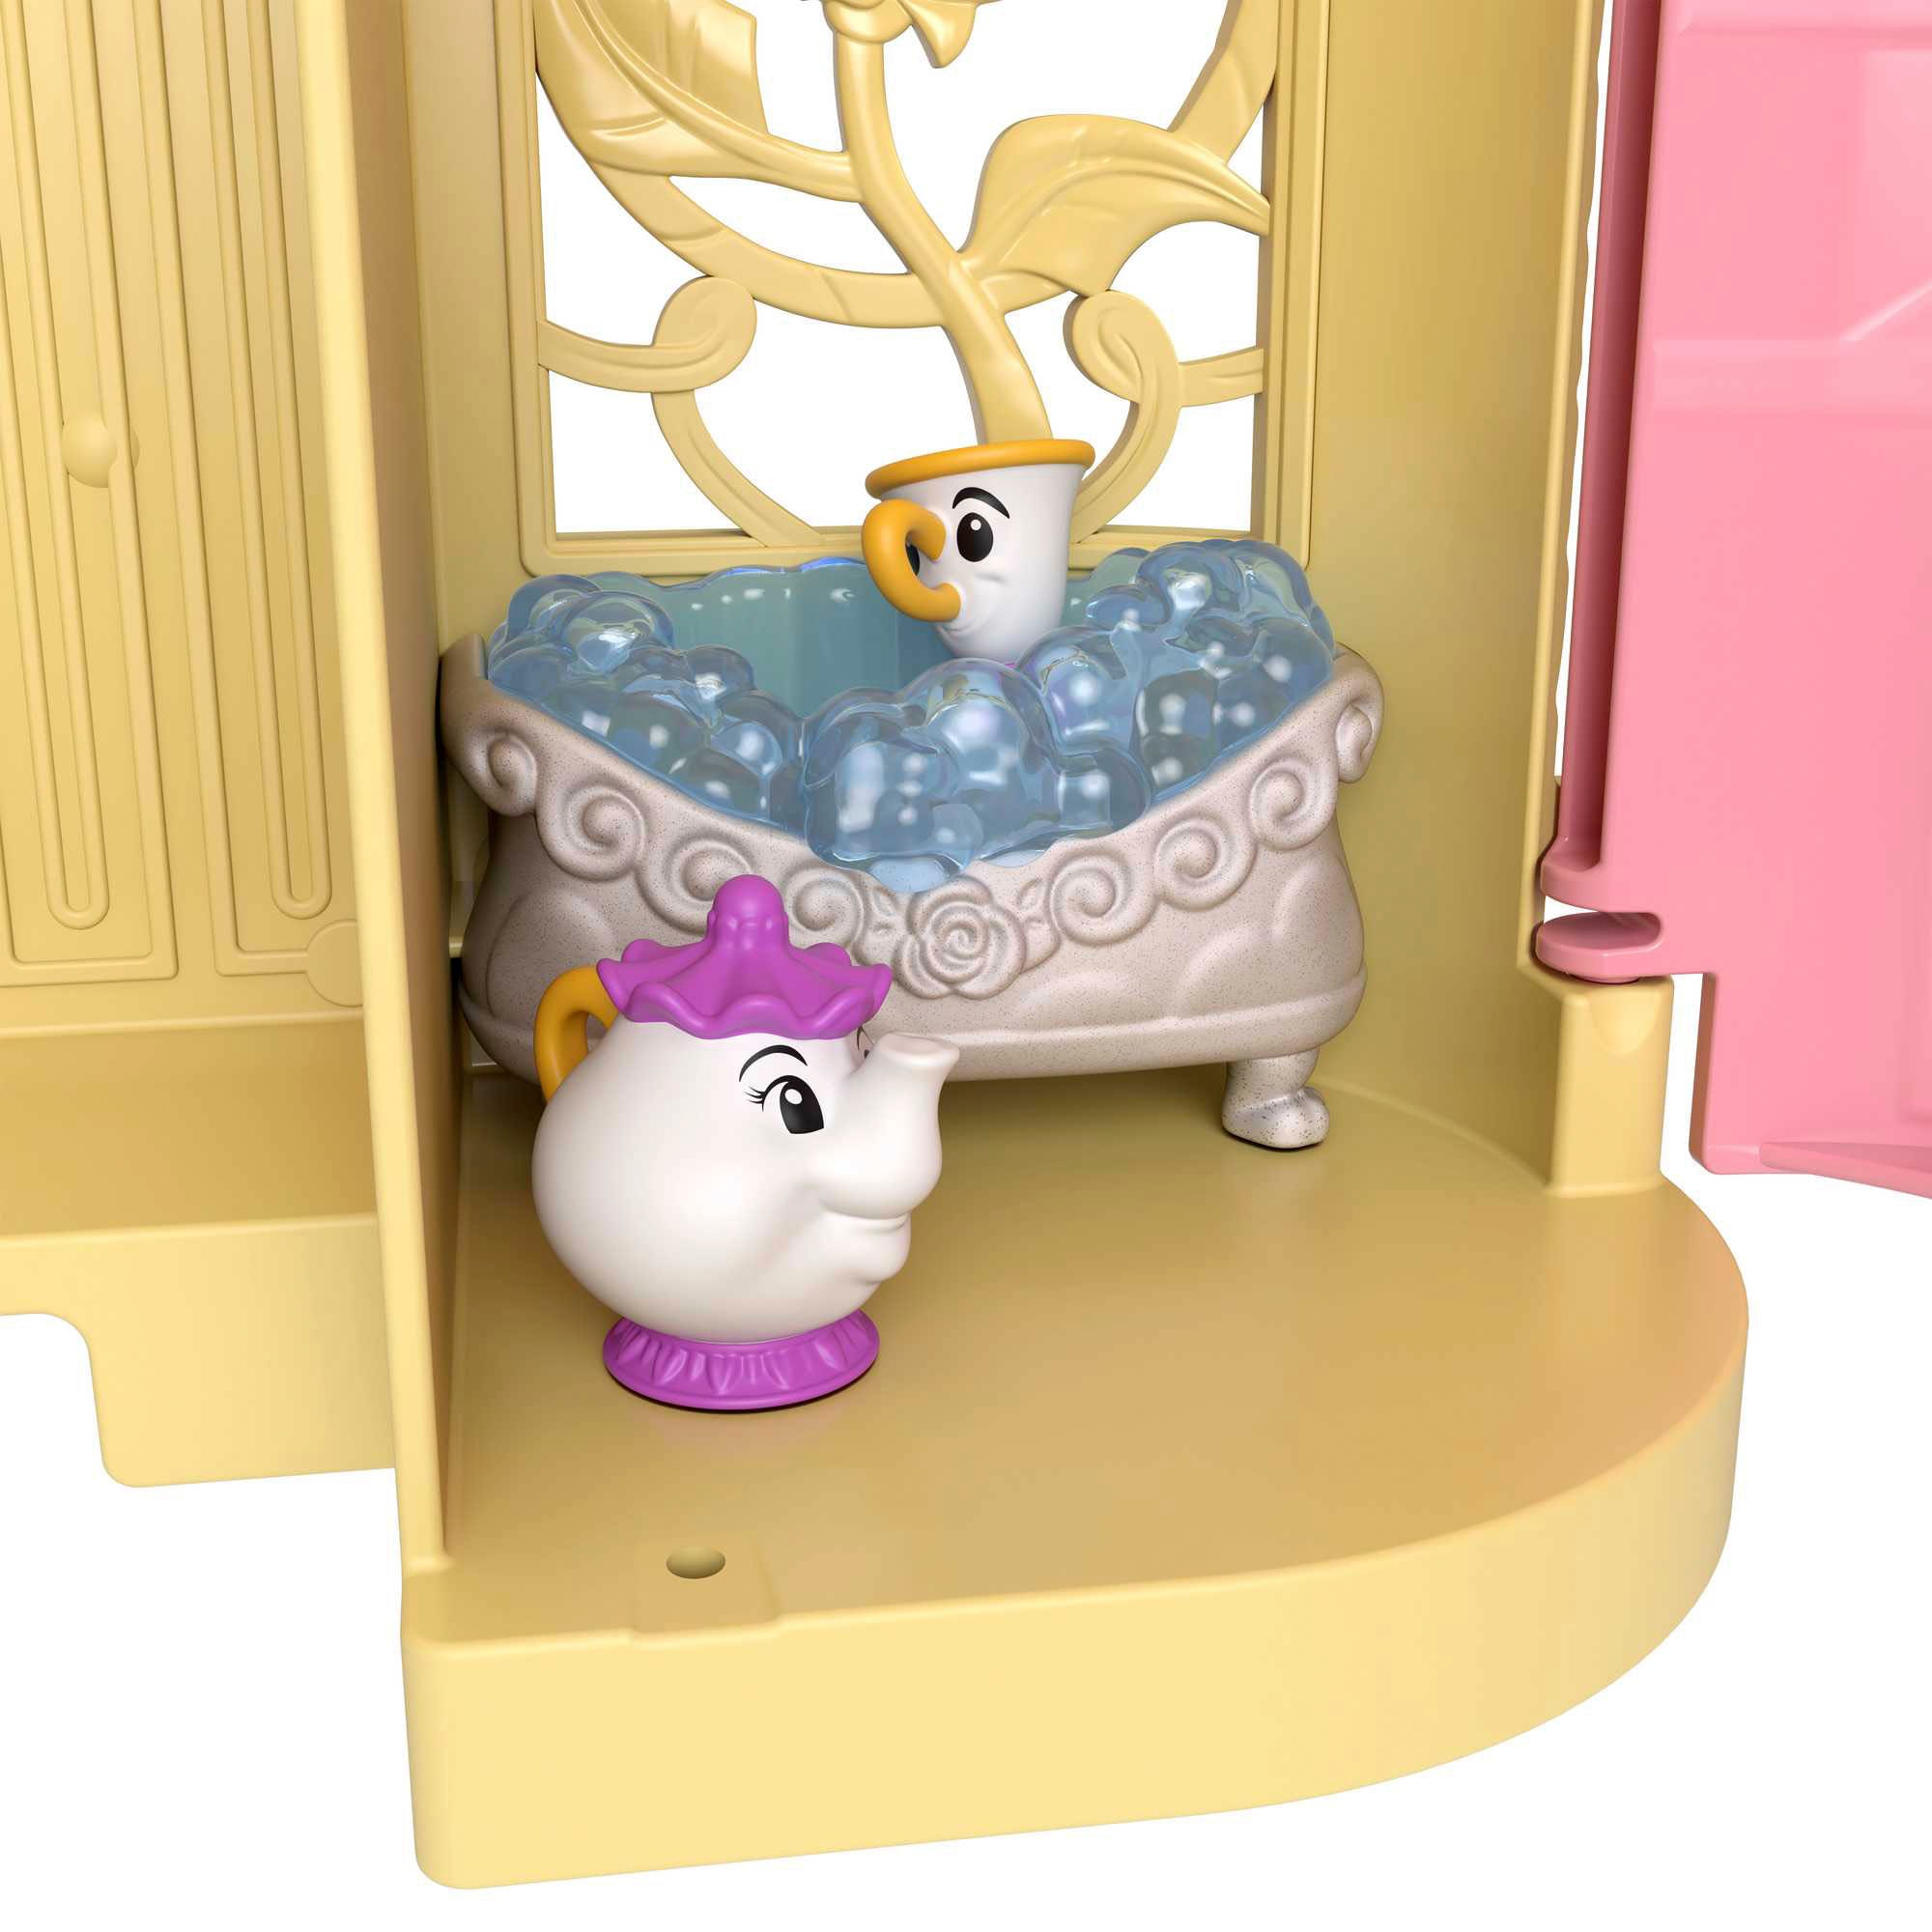 Mattel® Spielwelt »Disney Prinzessin, Belles Stapelschloss«, inklusive Puppe